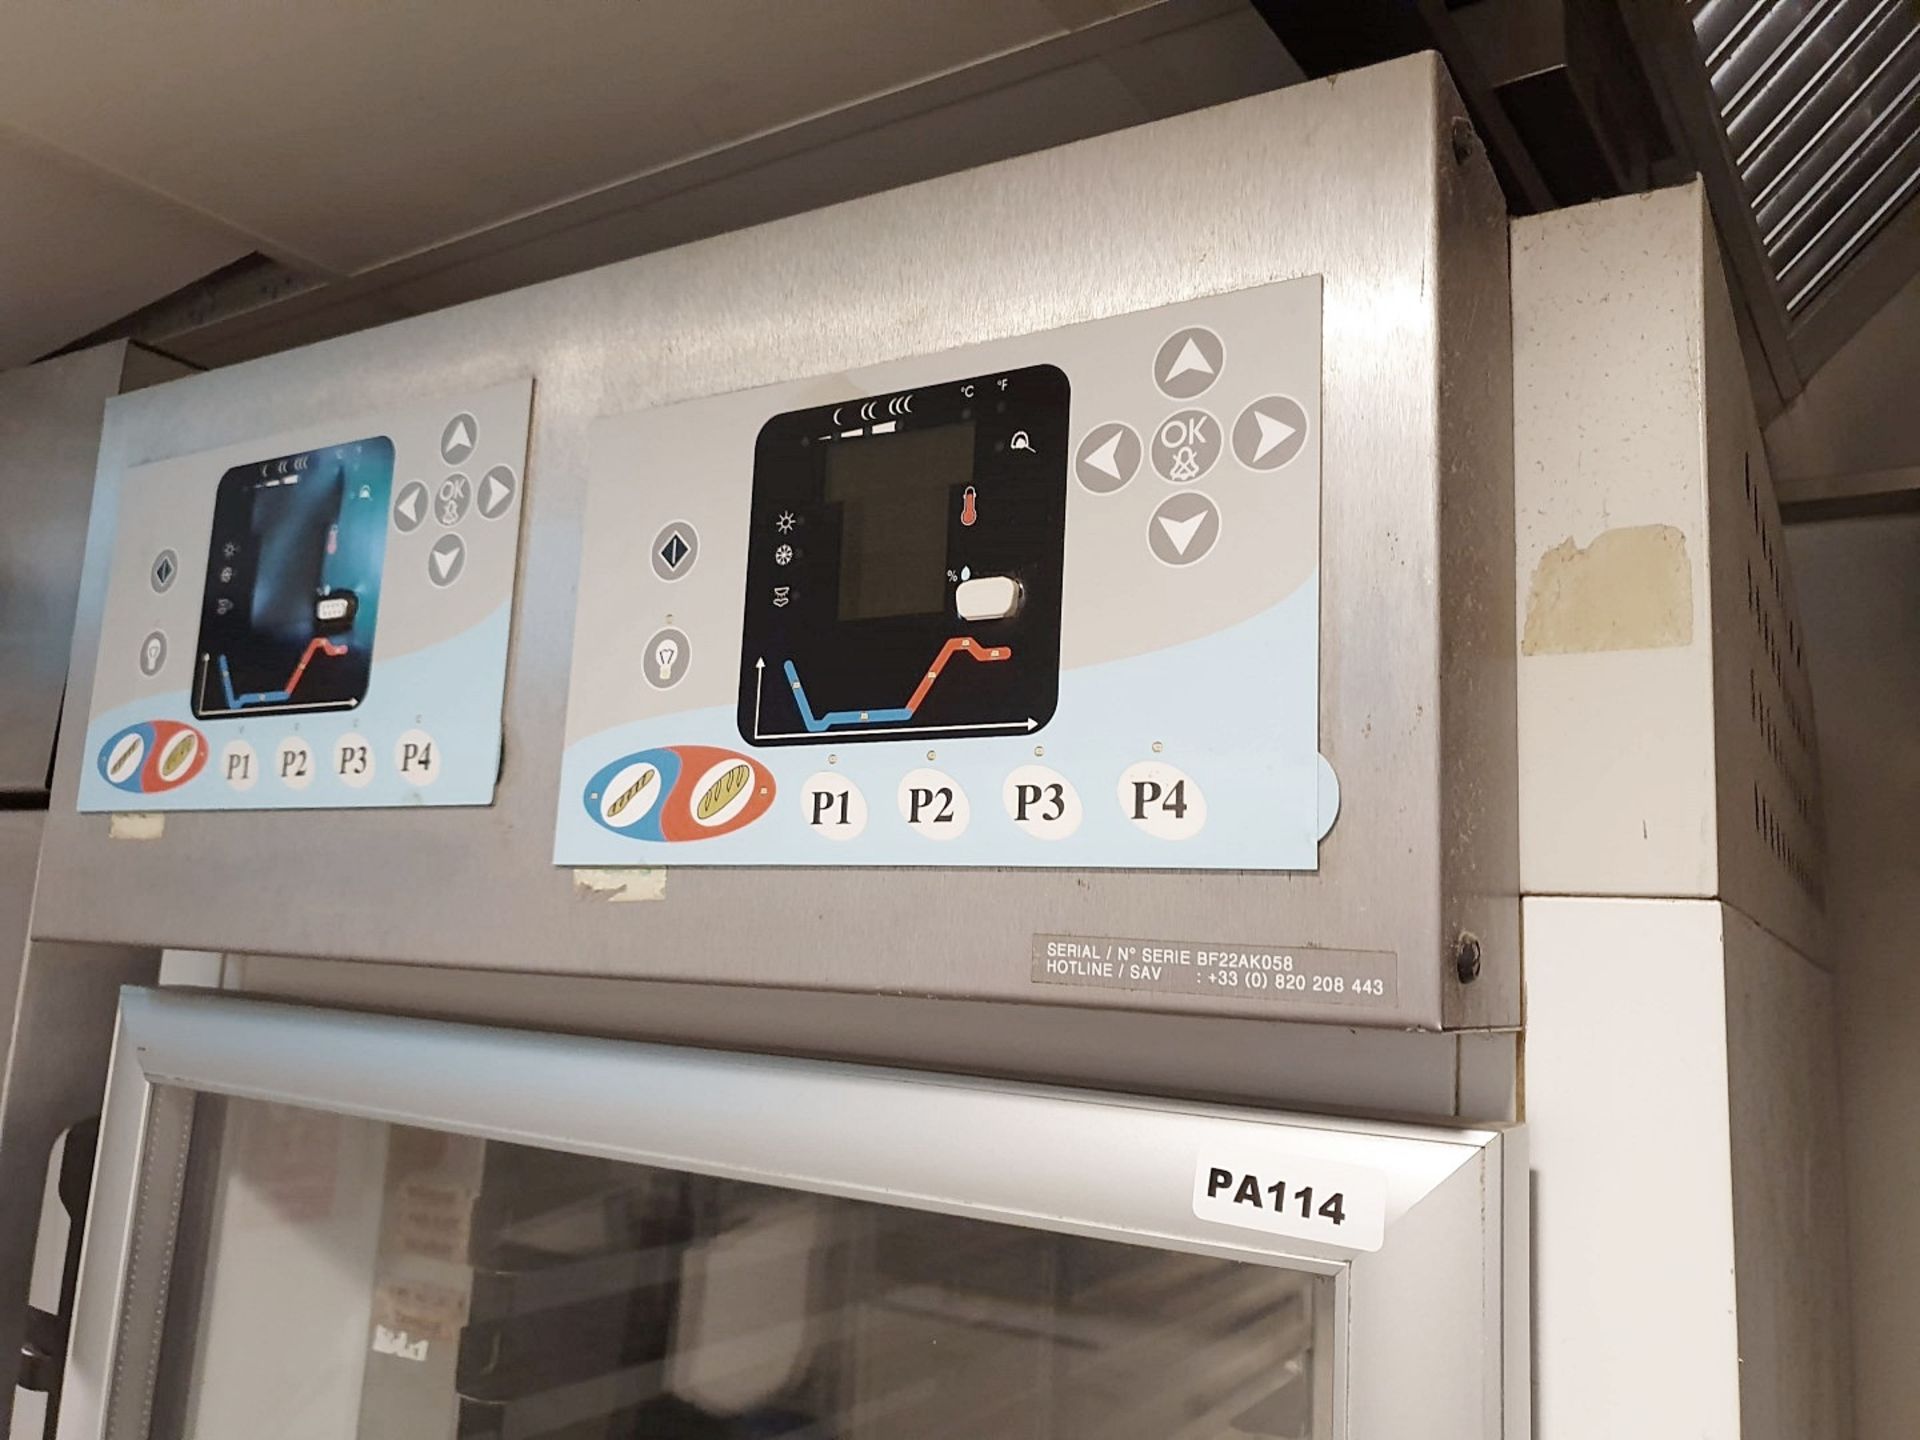 1 x Bakery Fermentation Cabinet - Armoire de Pousse - 24 Grid - H213 x W70 x D90 cms - Ref PA114 - - Image 3 of 5